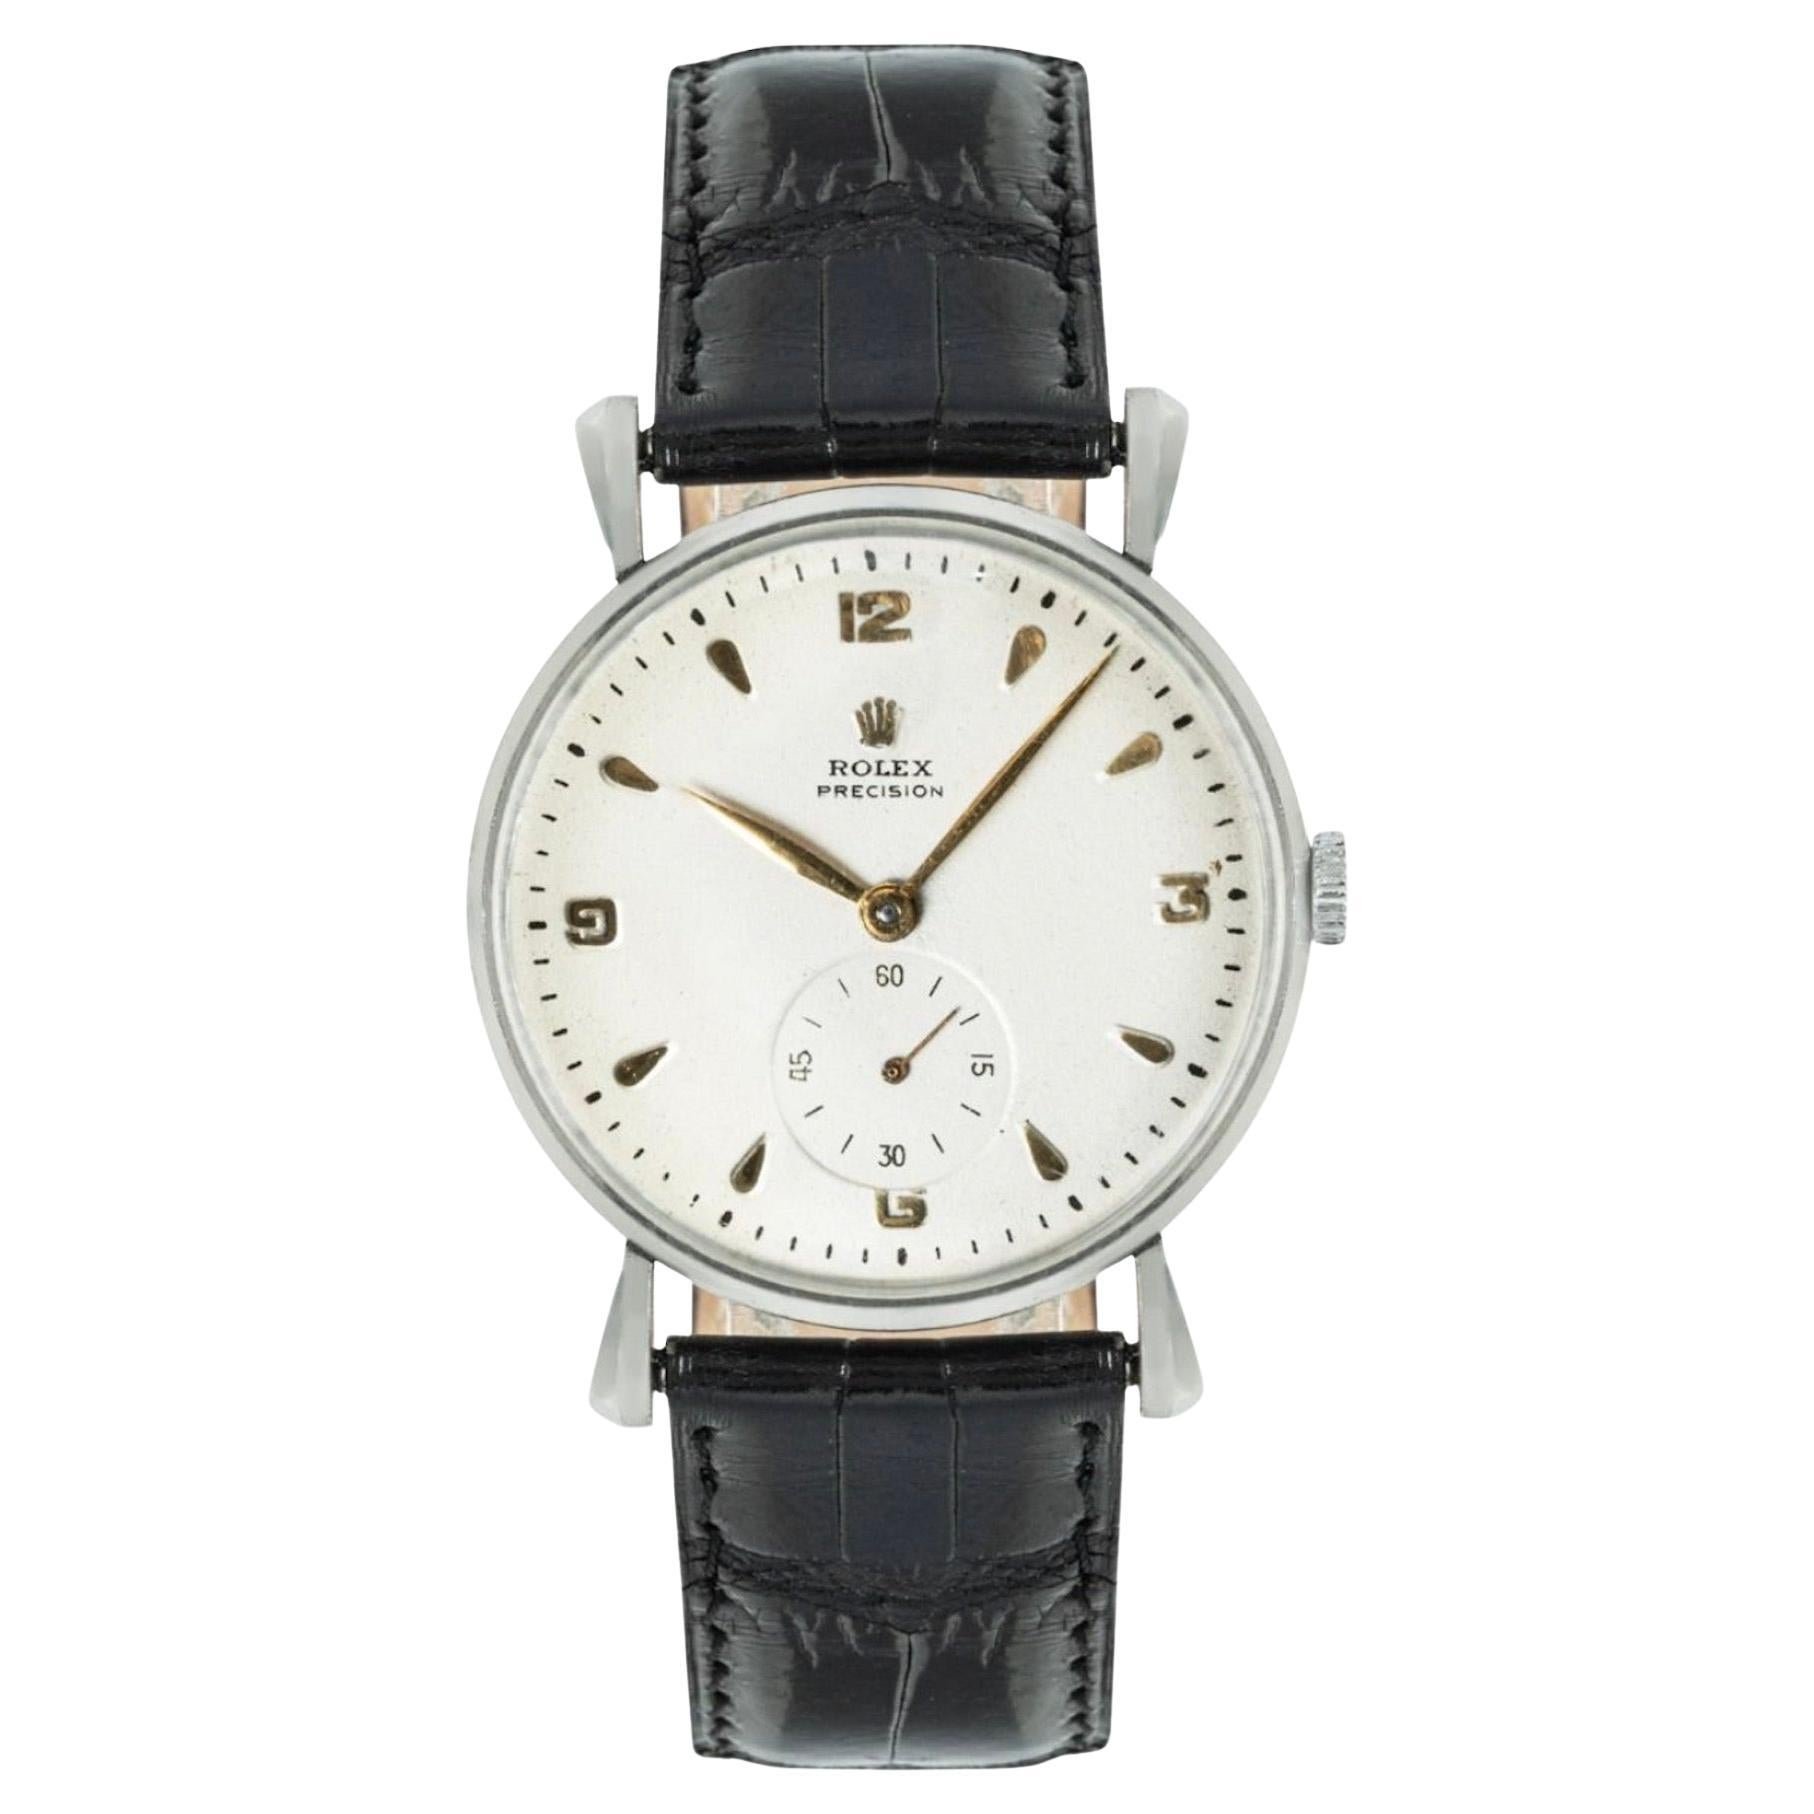 Vintage Rolex Precision Watch For Sale